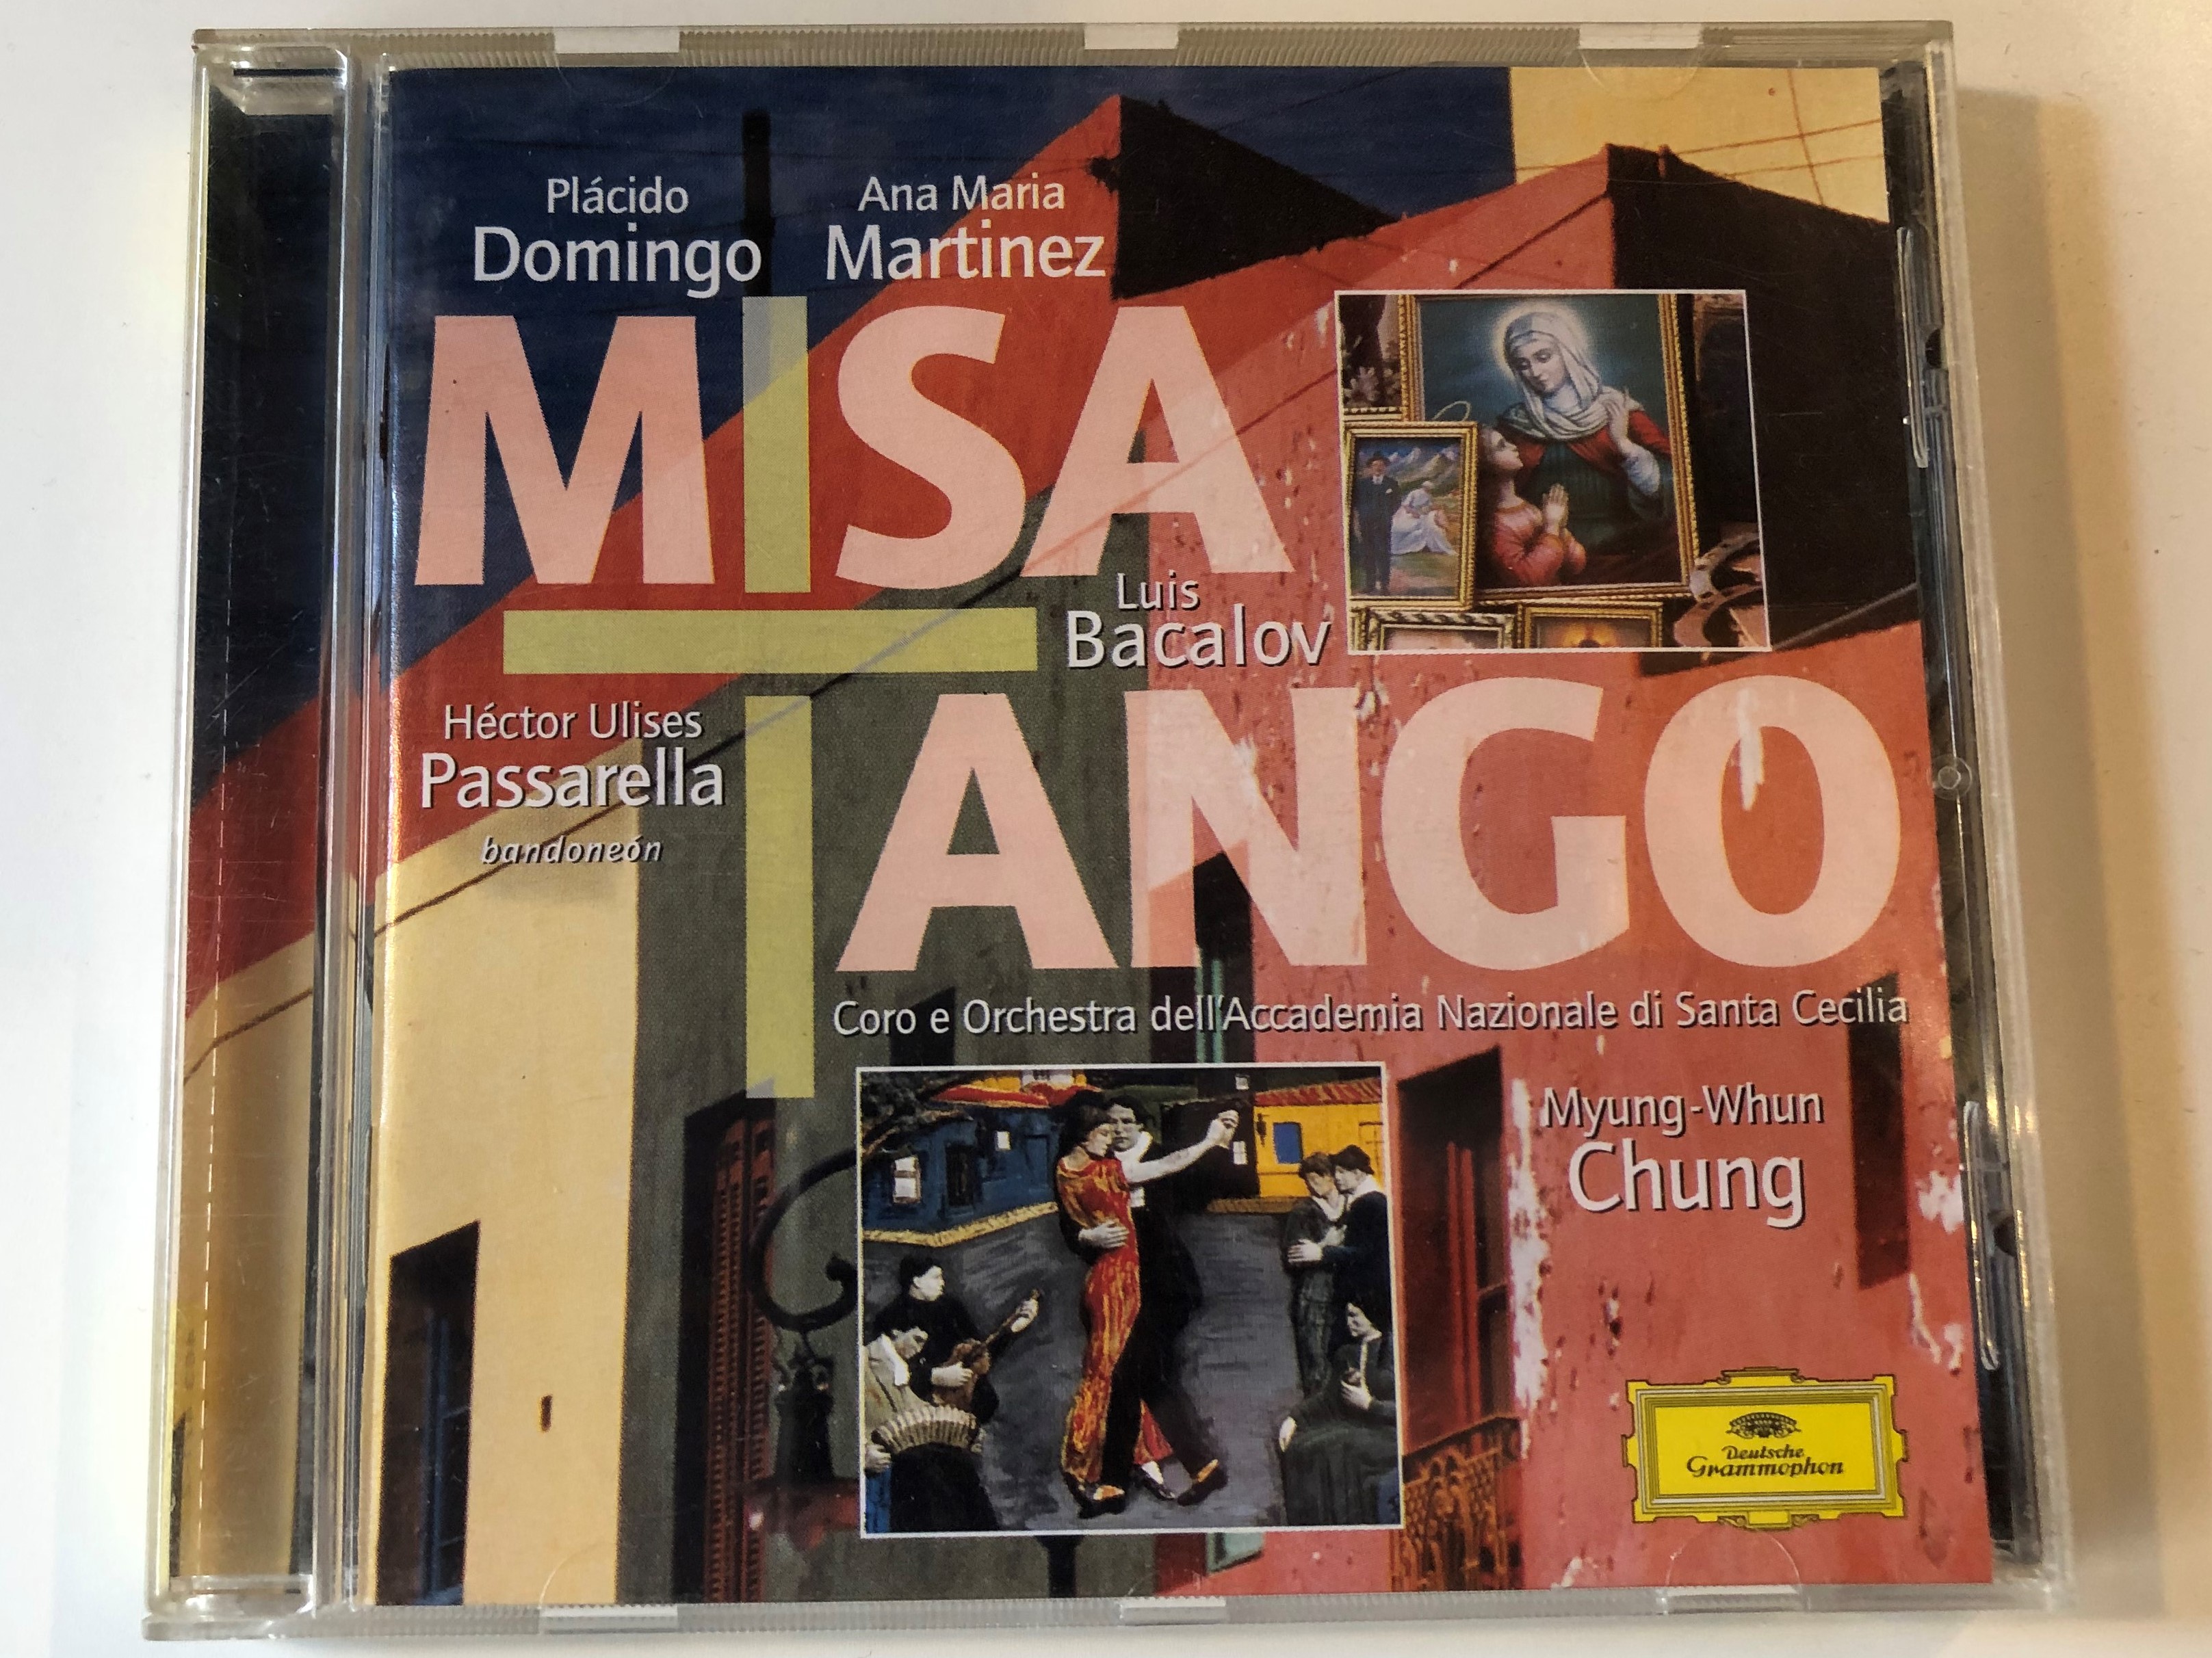 misa-tango-luis-bacalov-placido-domingo-ana-maria-martinez-myung-whun-chung-coro-dell-accademia-nazionale-di-santa-cecilia-deutsche-grammophon-audio-cd-2000-stereo-463-471-2-1-.jpg